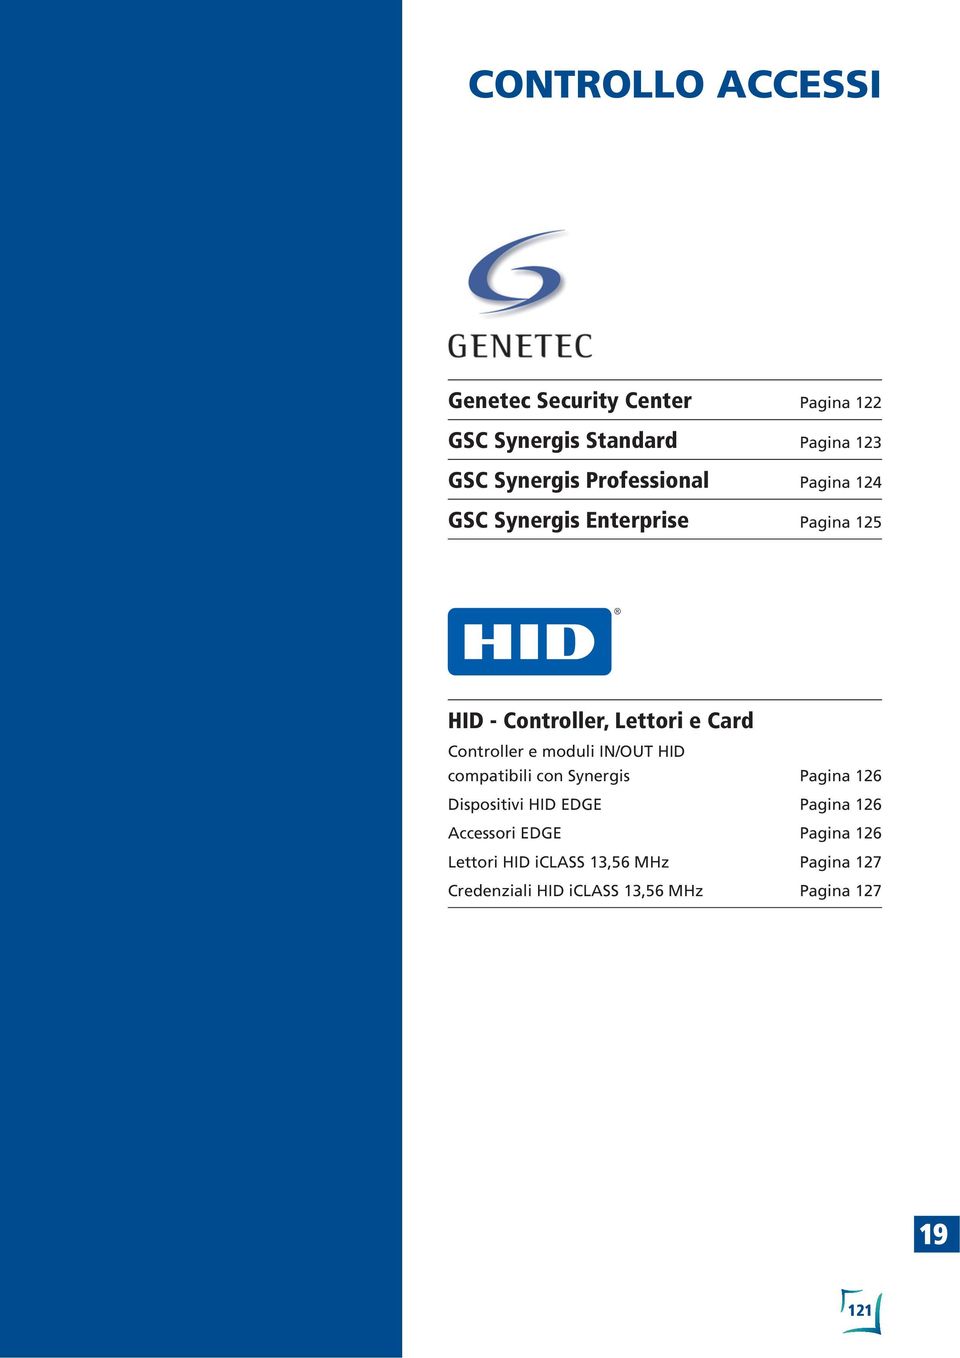 moduli IN/OUT HID compatibili con Synergis Dispositivi HID EDGE Accessori EDGE Lettori HID